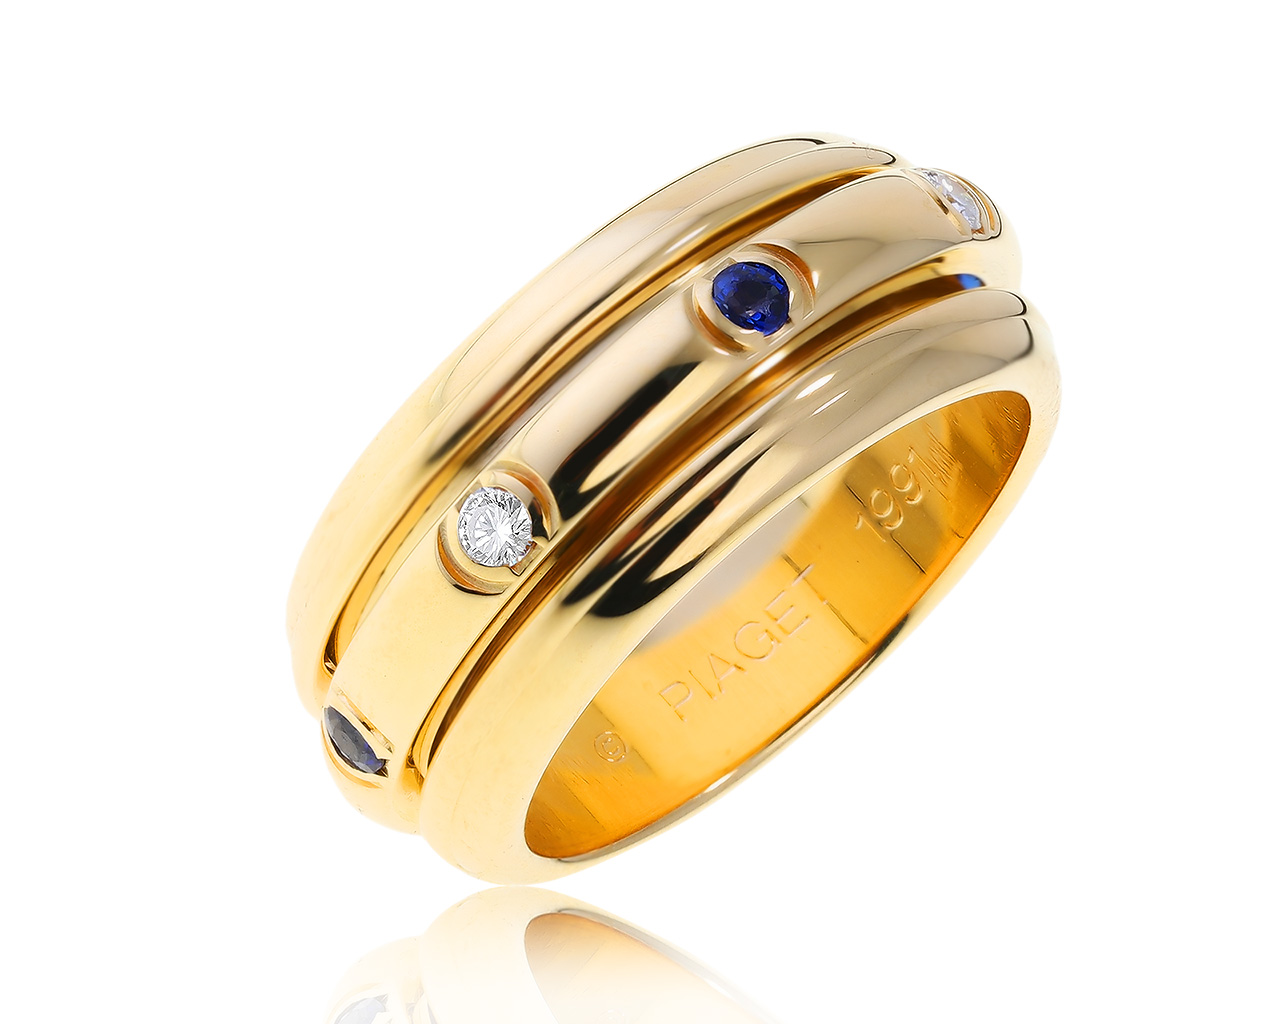 Оригинальное золотое кольцо с бриллиантами 0.14ct Piaget Possession